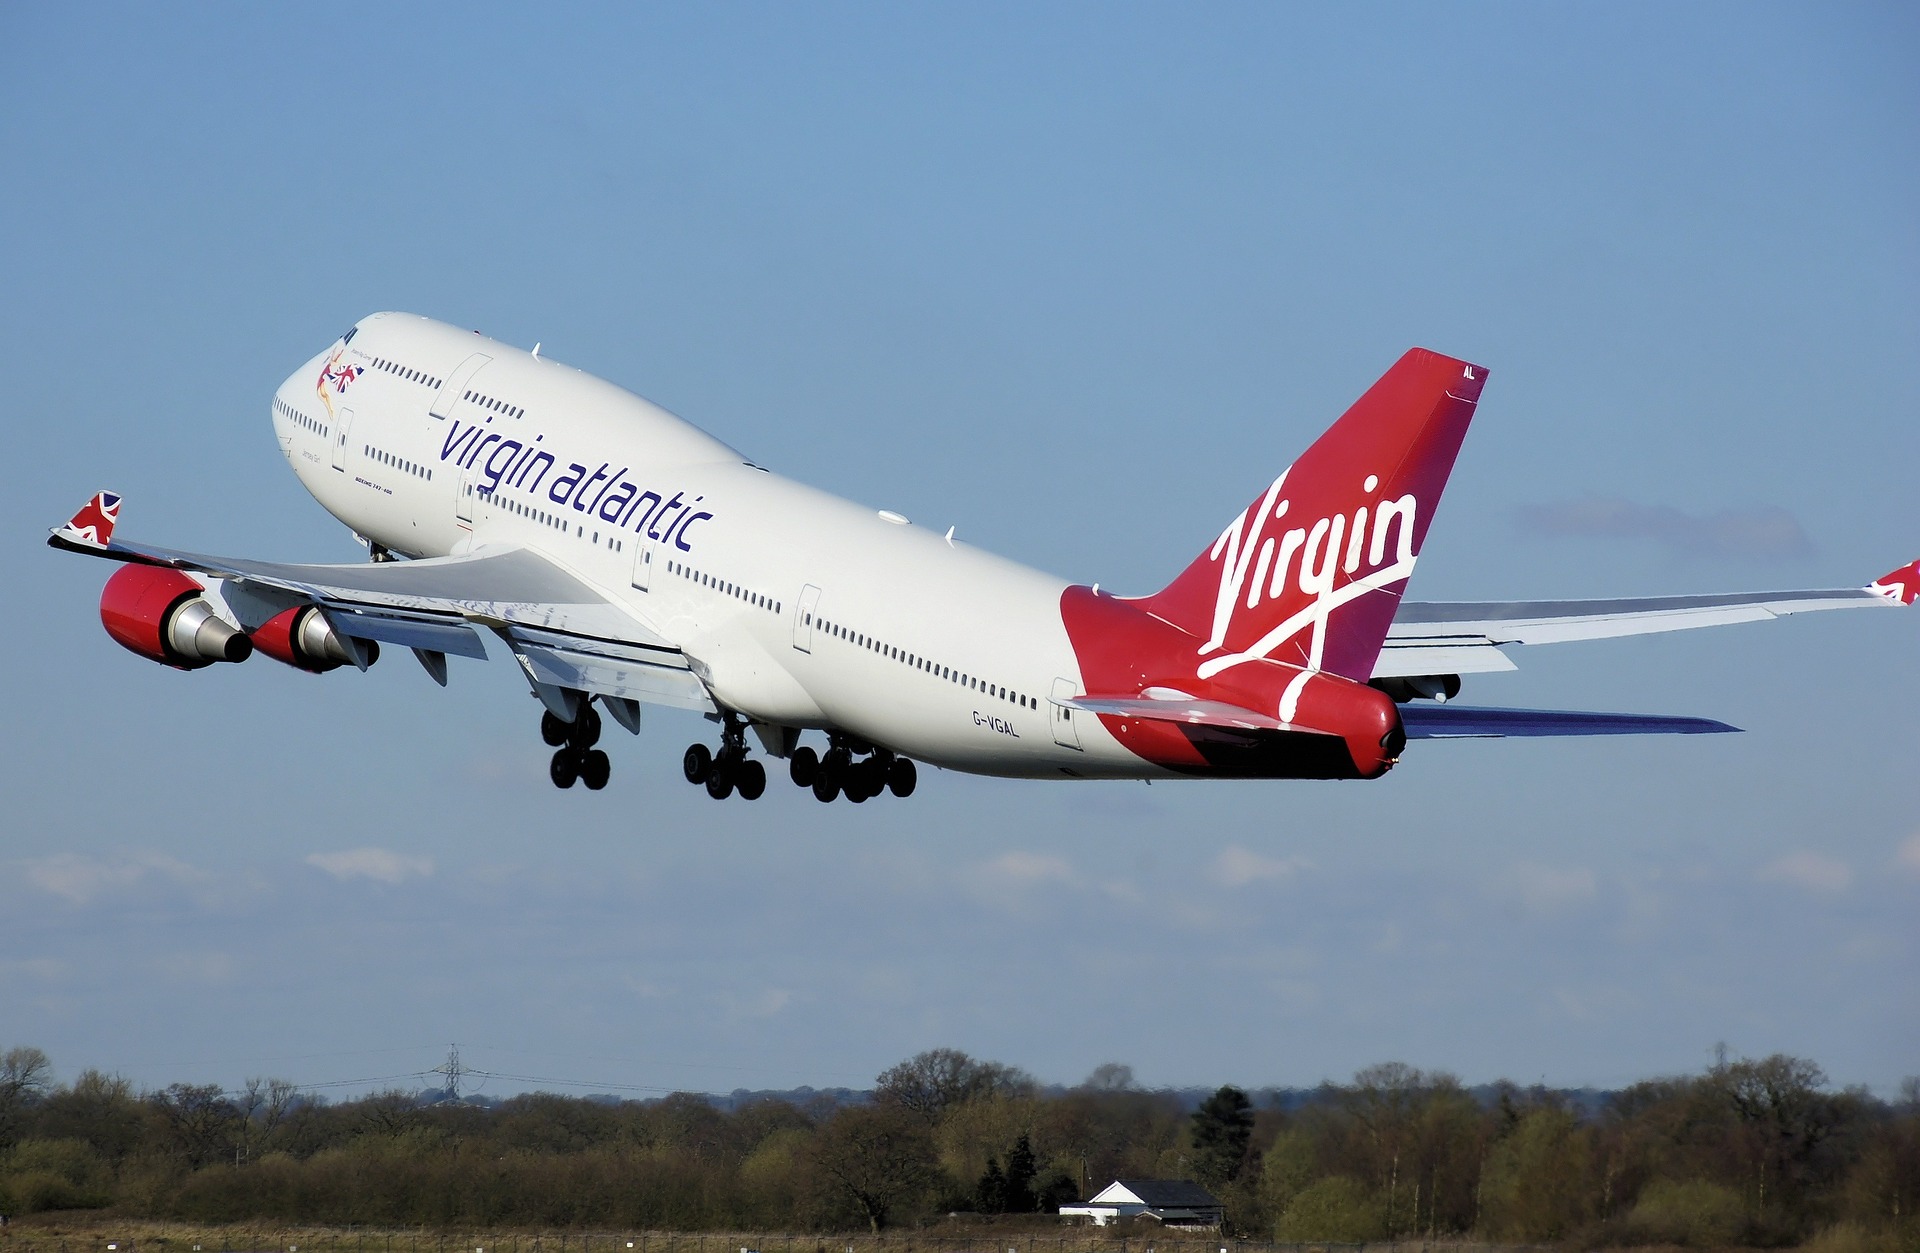 Virgin Atlantic changes